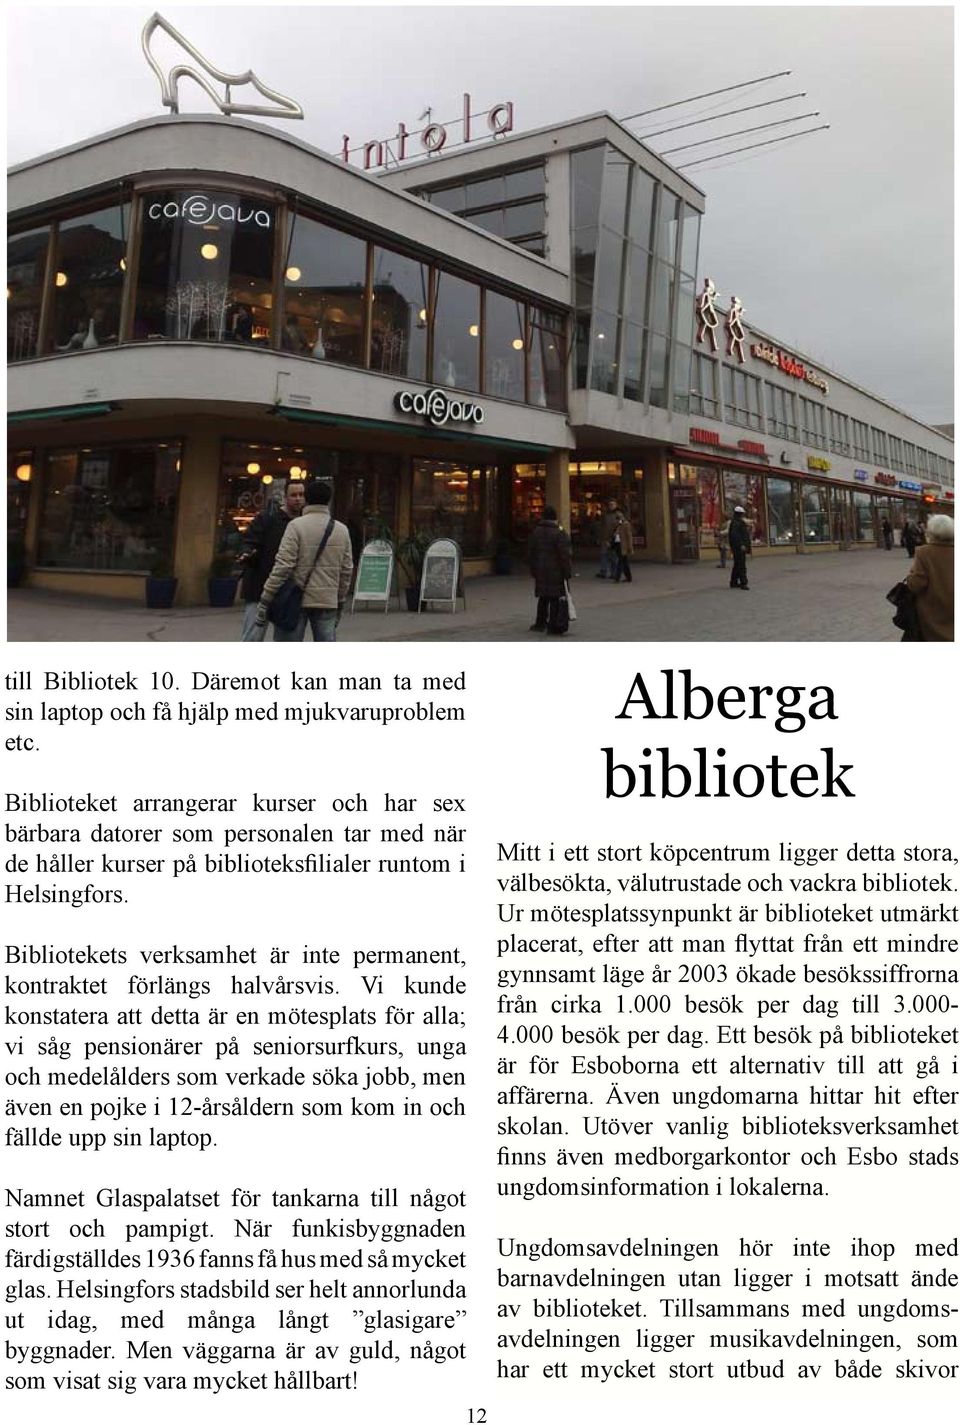 Från Åbo till Alberga bibliotekens roll som mötesplats - PDF Free 